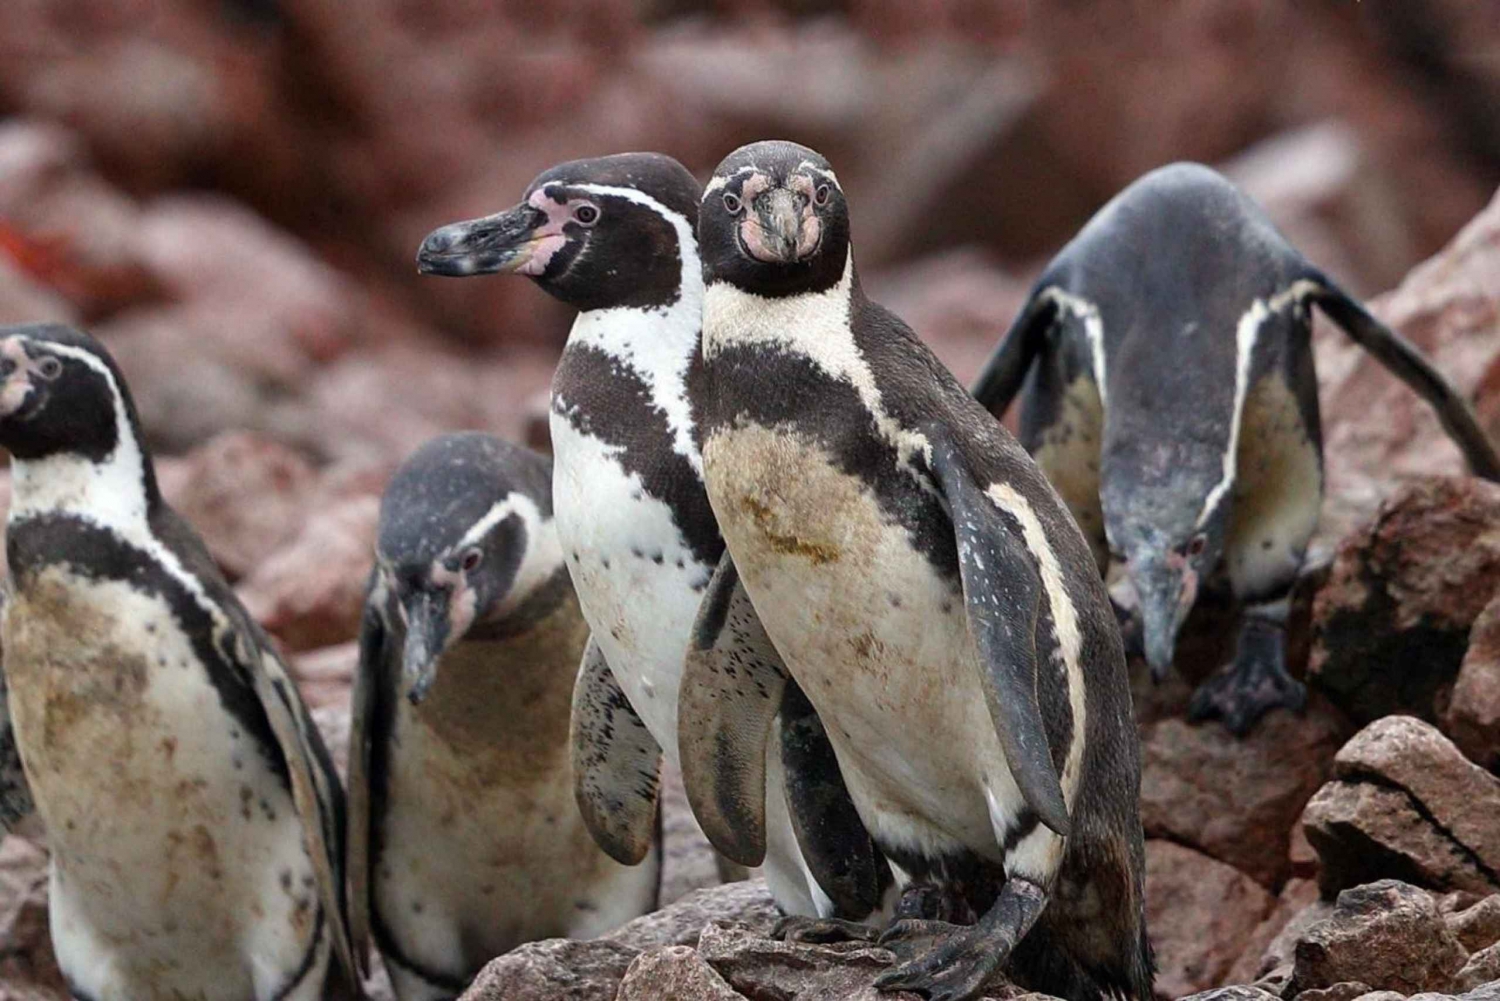 Paracas : Observation de la faune marine dans les îles Ballestas